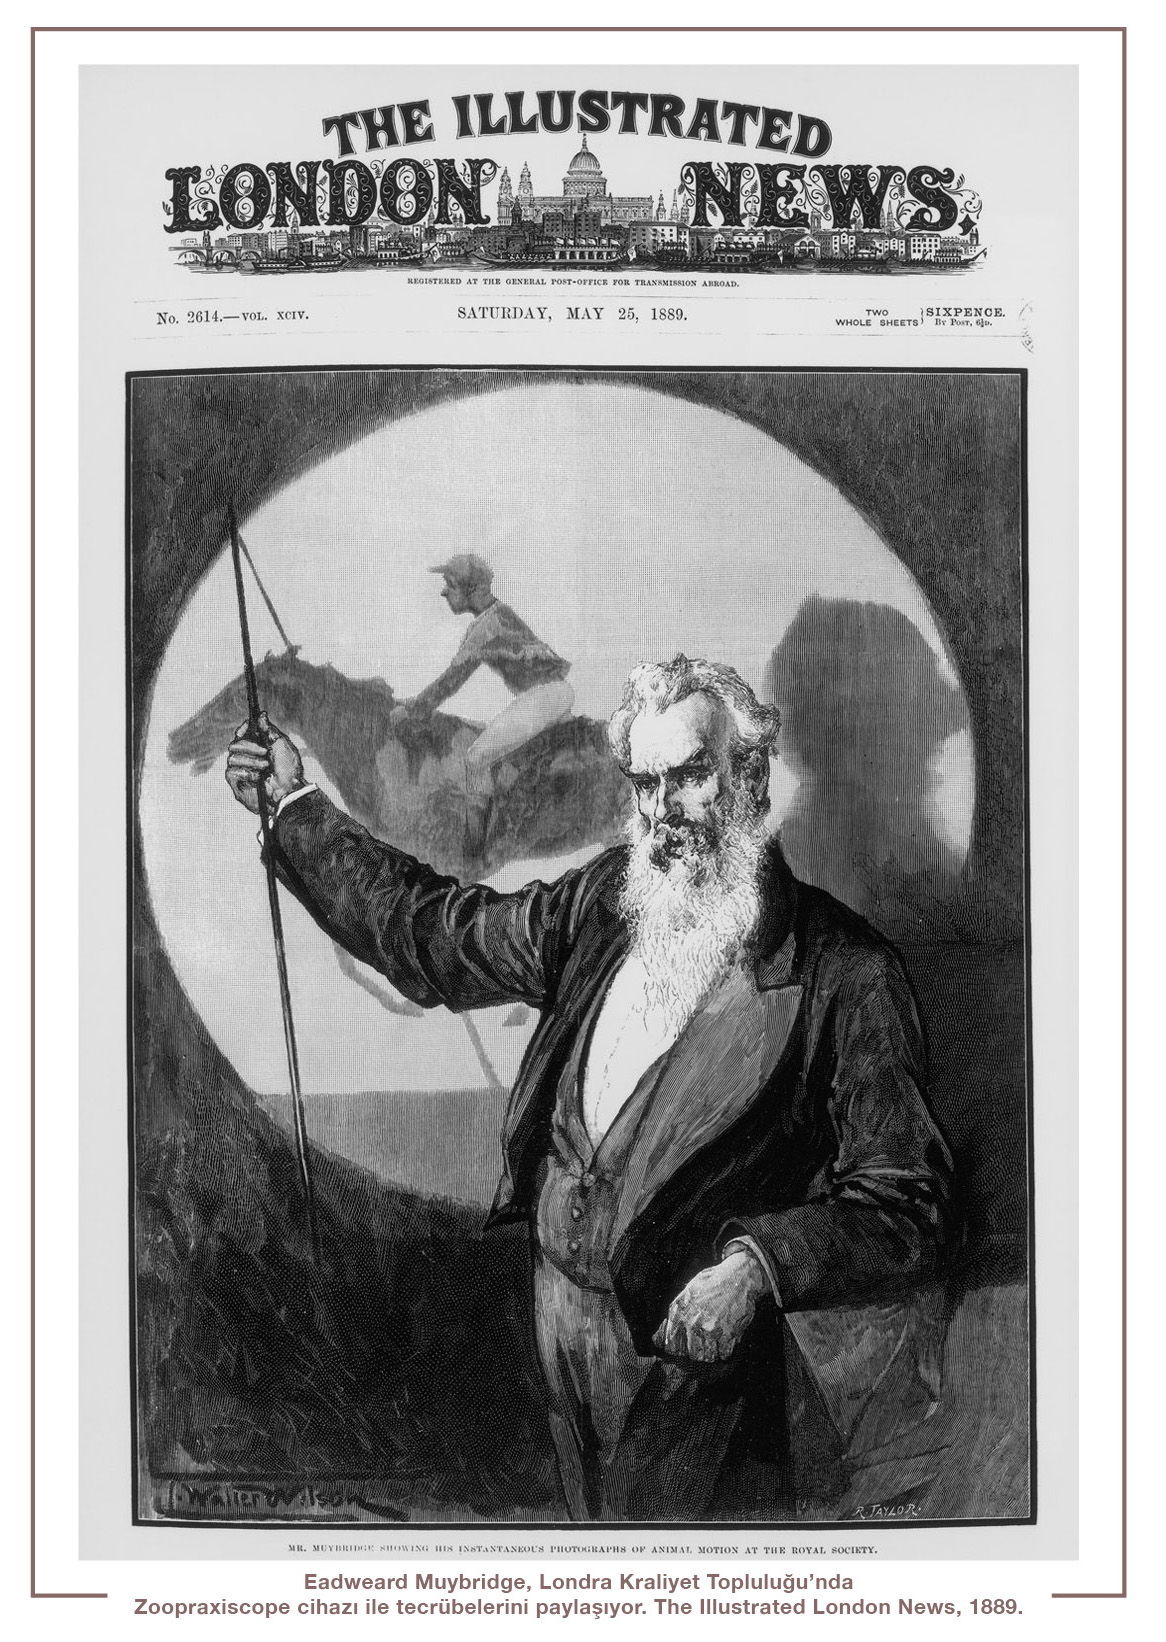  Eadweard Muybridge, Londra Kraliyet Topluluğu’nda Zoopraxiscope cihazı ile tecrübelerini paylaşıyor.  The Illustrated London News, 1889.